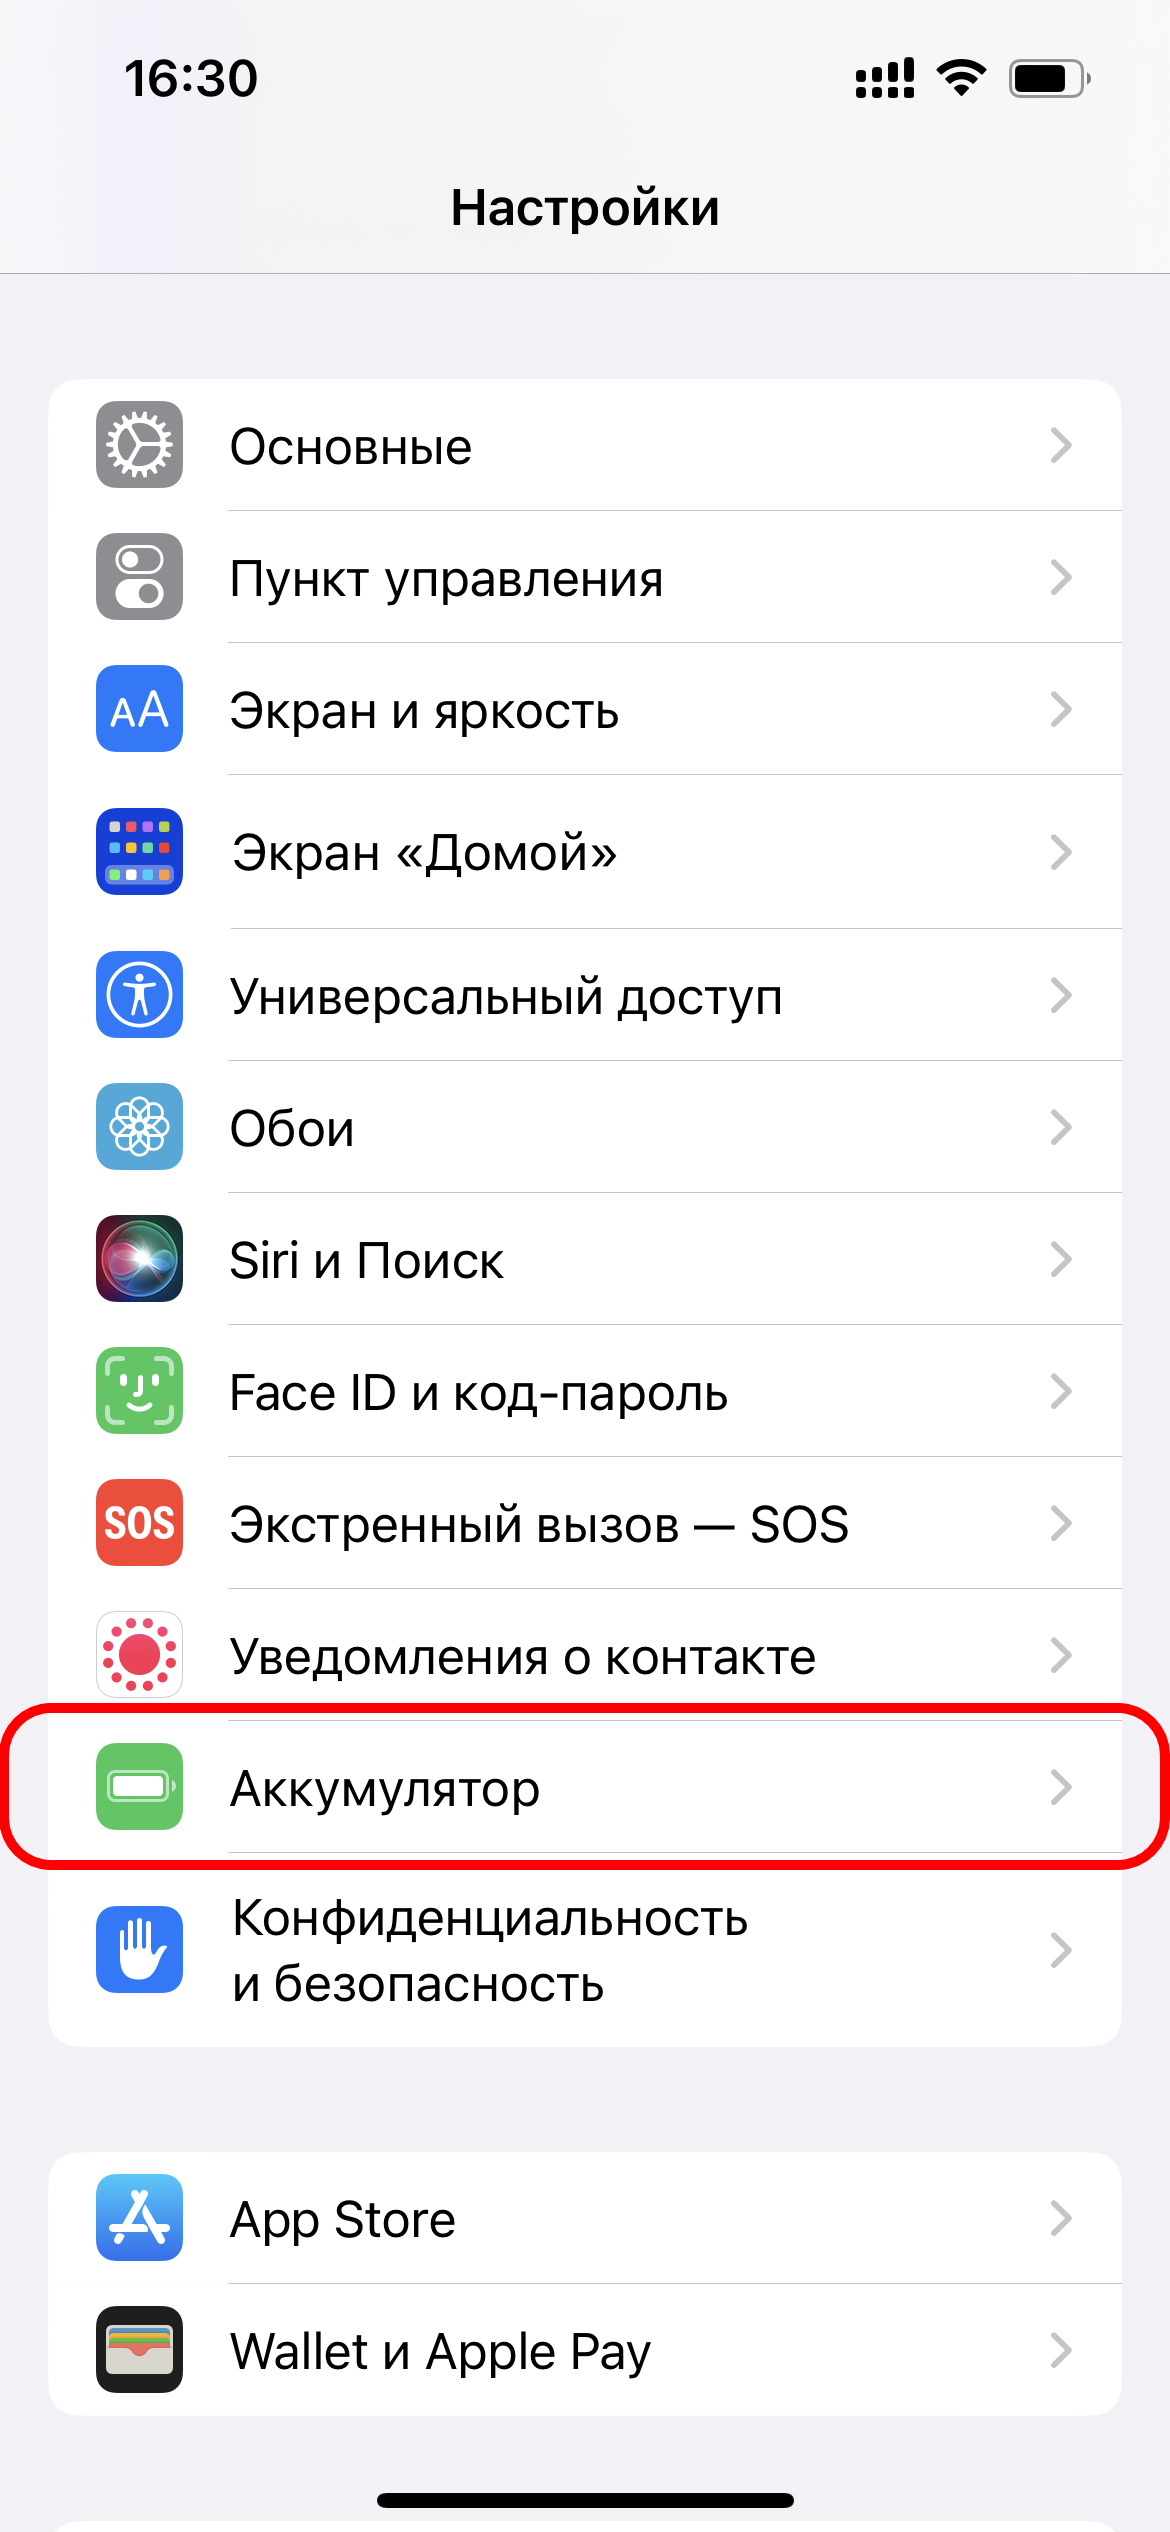 В iOS стало можно включить отображение заряда Айфон в процентах. Попробуйте хоть сейчас